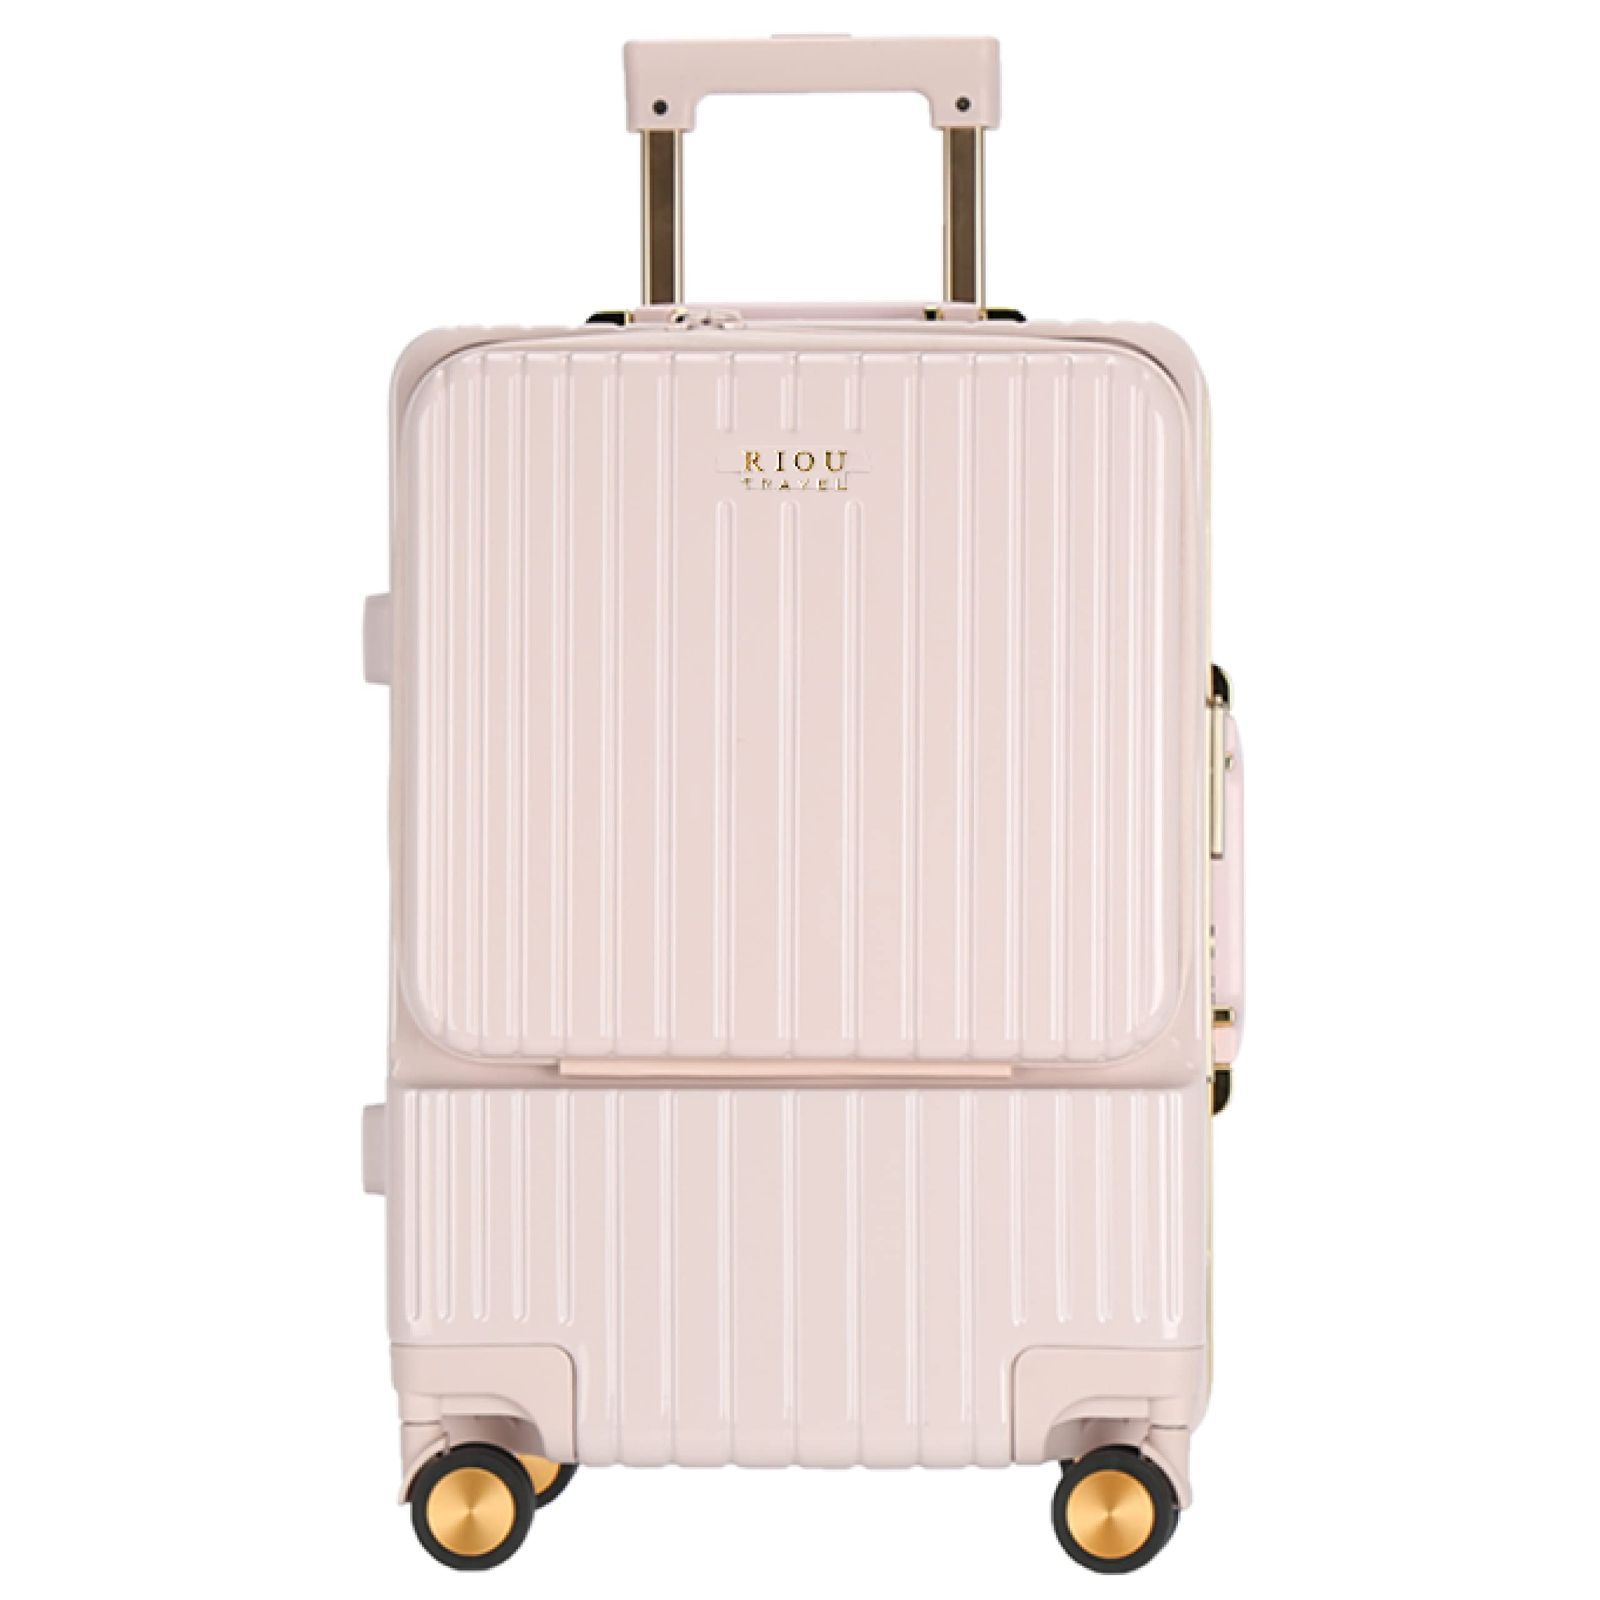 色: ピンク】RIOUスーツケース フロントオープン 機内持込 アルミフレーム-